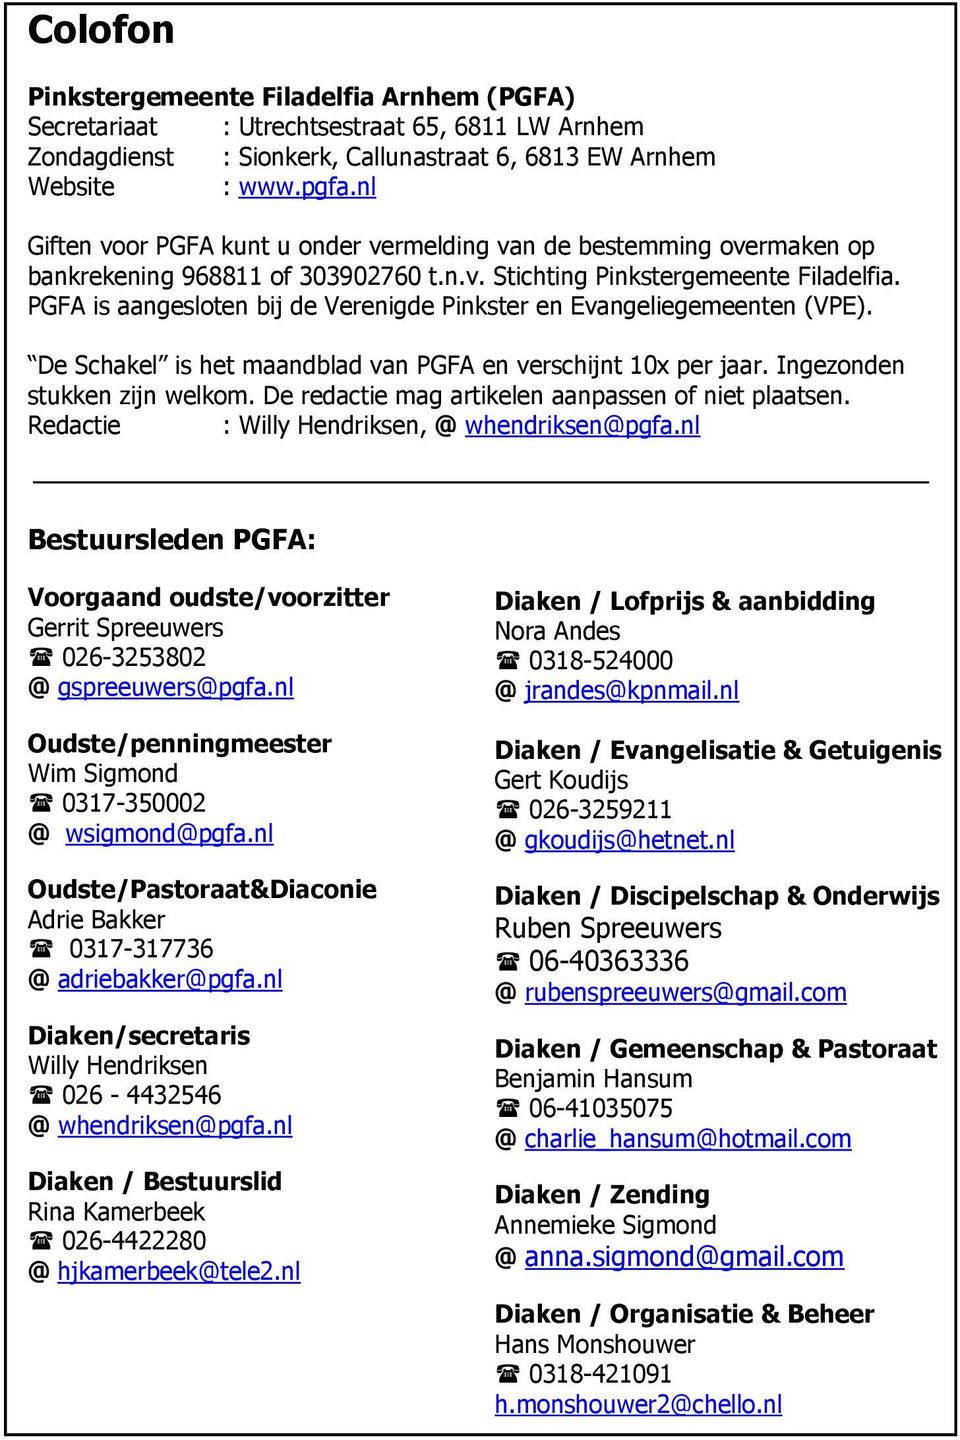 PGFA is aangesloten bij de Verenigde Pinkster en Evangeliegemeenten (VPE). De Schakel is het maandblad van PGFA en verschijnt 10x per jaar. Ingezonden stukken zijn welkom.